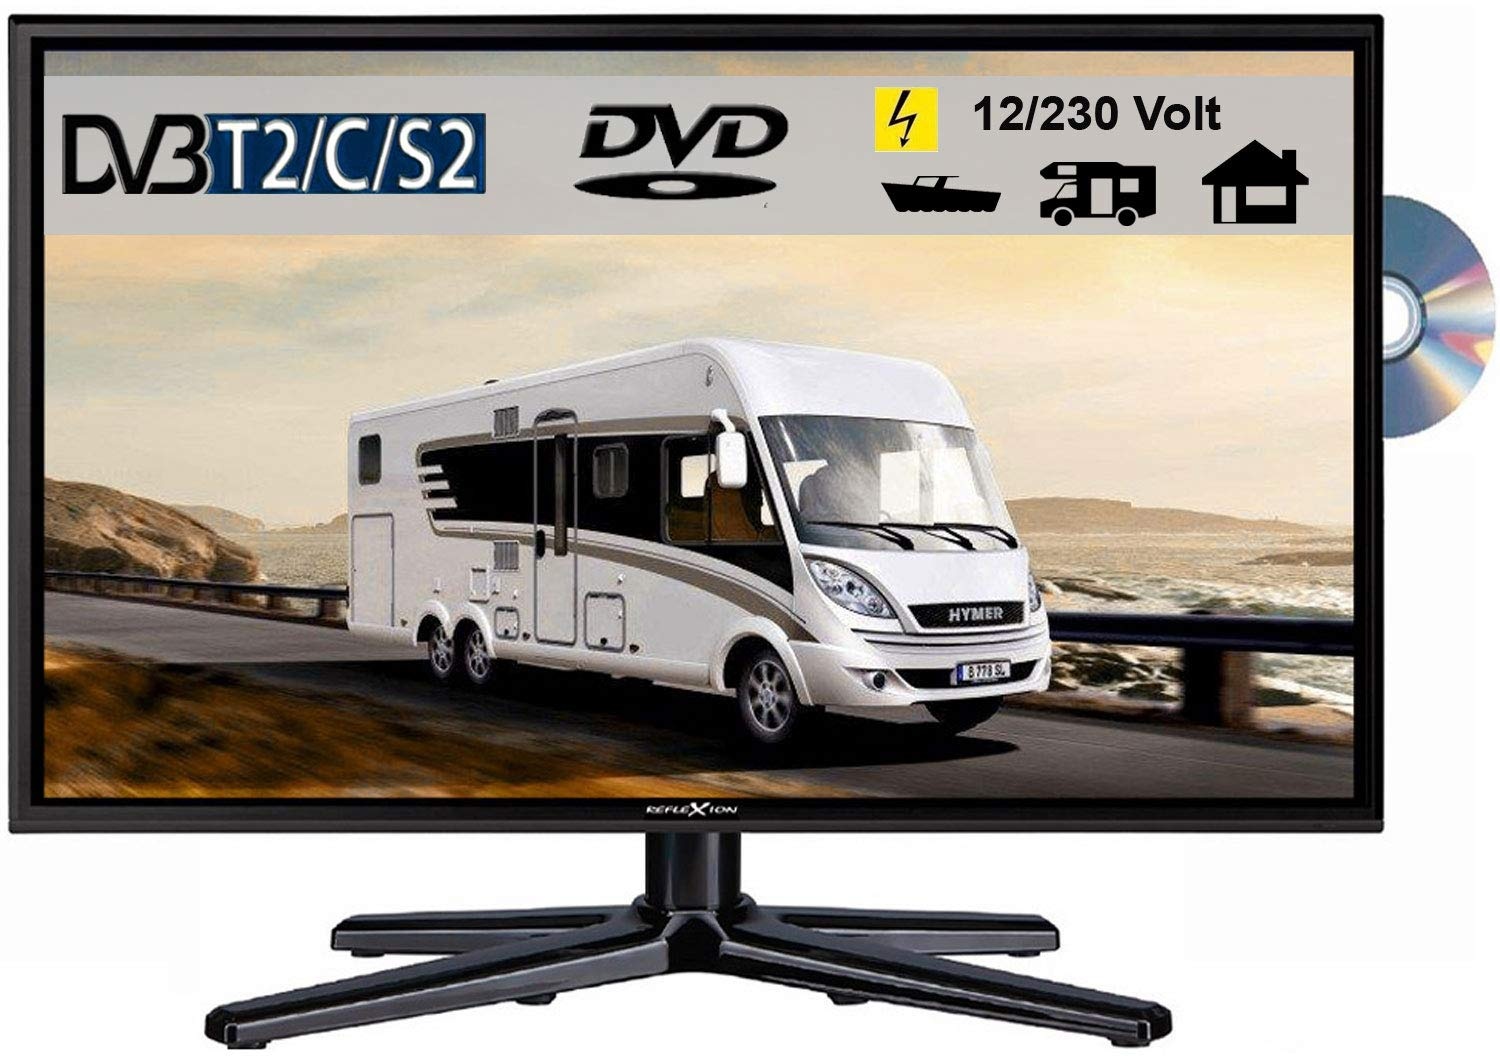 REFLEXION LDDW240 LED Fernseher 23.6 Zoll TV DVB-S2 / C / T2 DVD, 12Volt 230 Volt